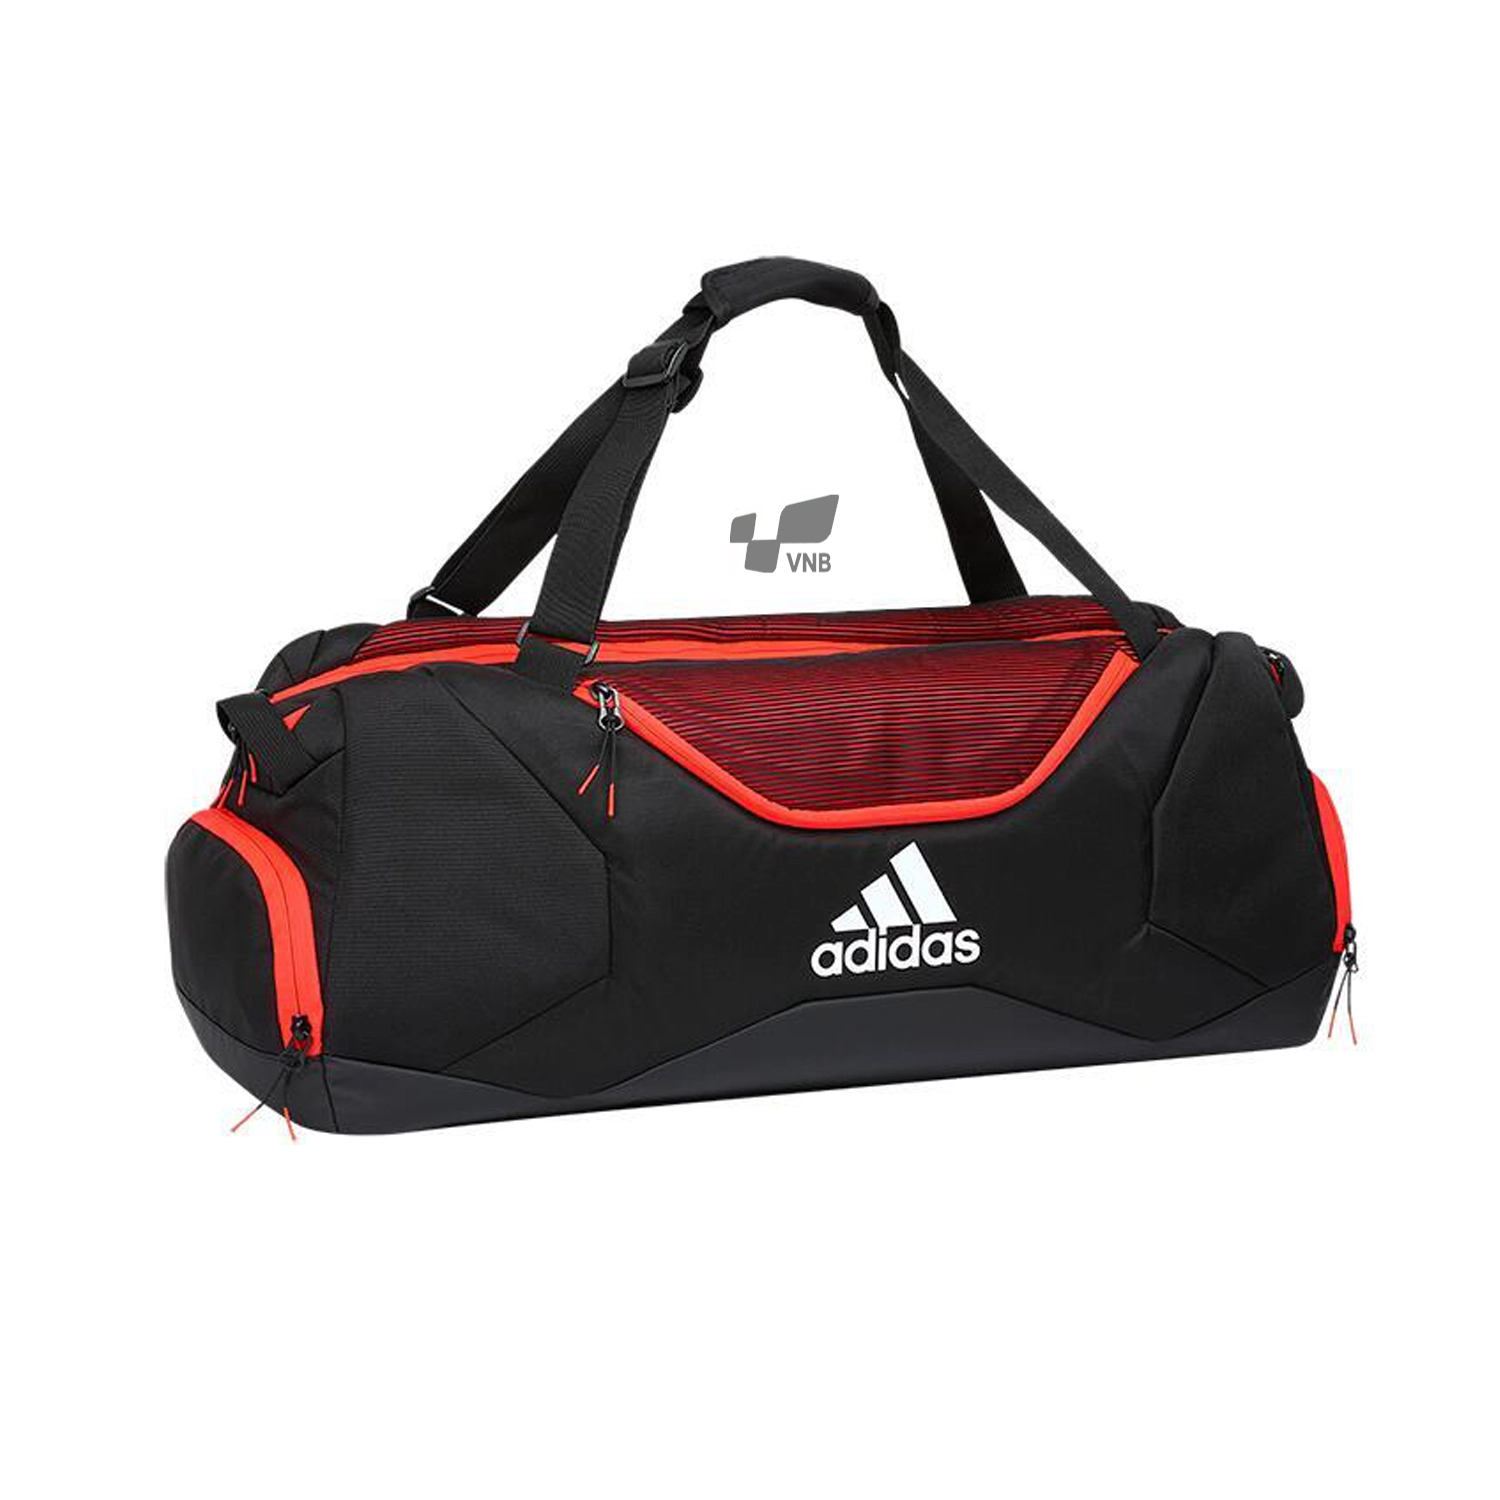 Túi cầu lông xịn Adidas XS5 Tournament Bag - Đen Đỏ chính hãng